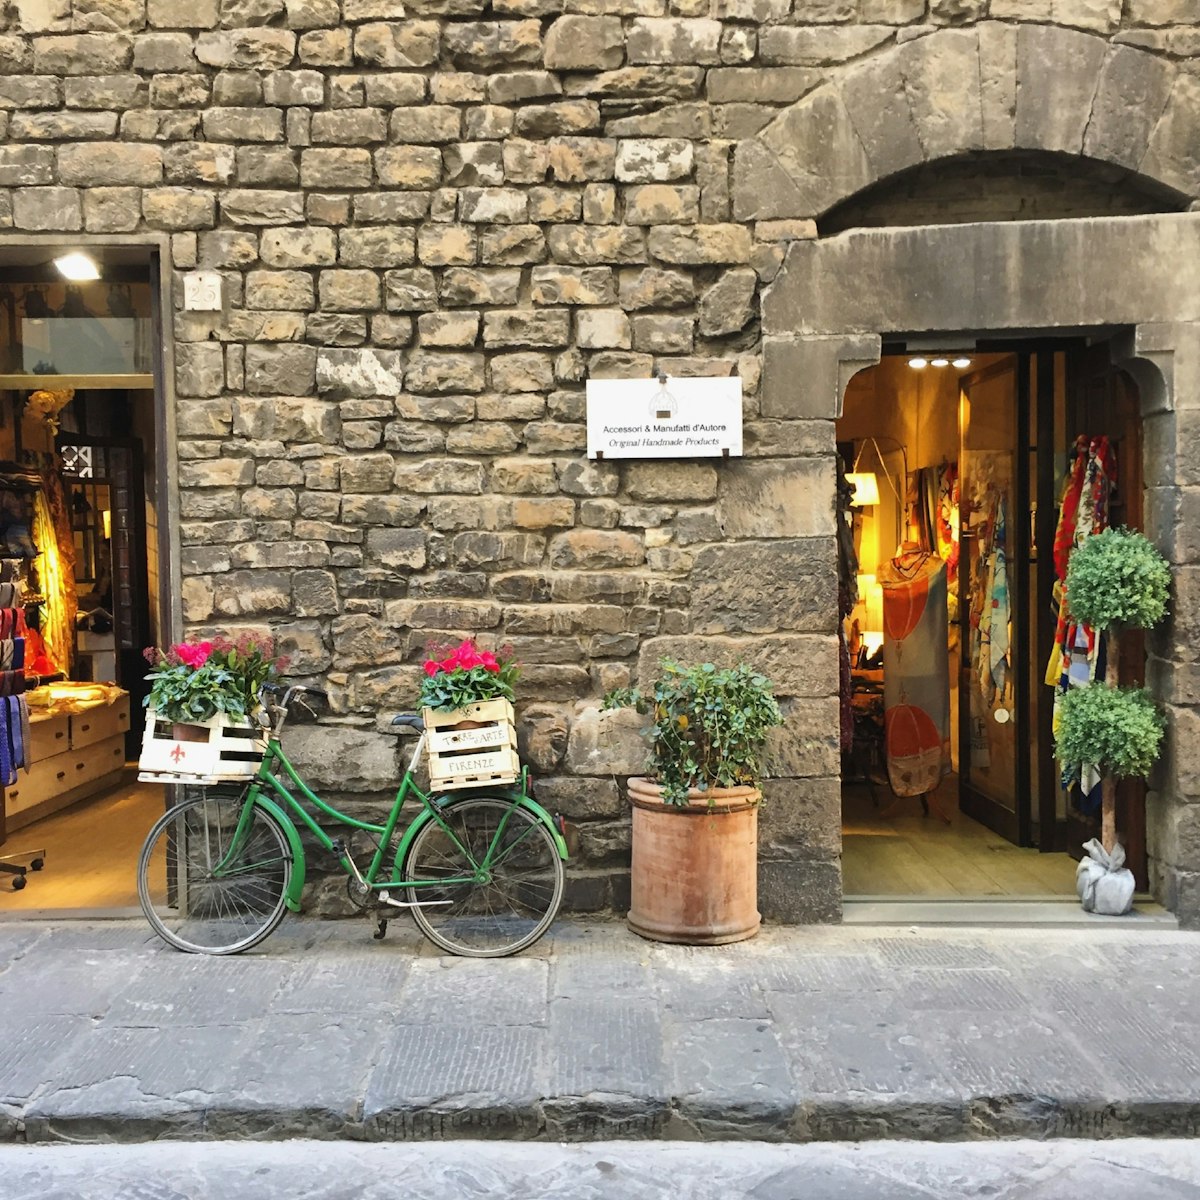 Shop front, Torre D’Arte.